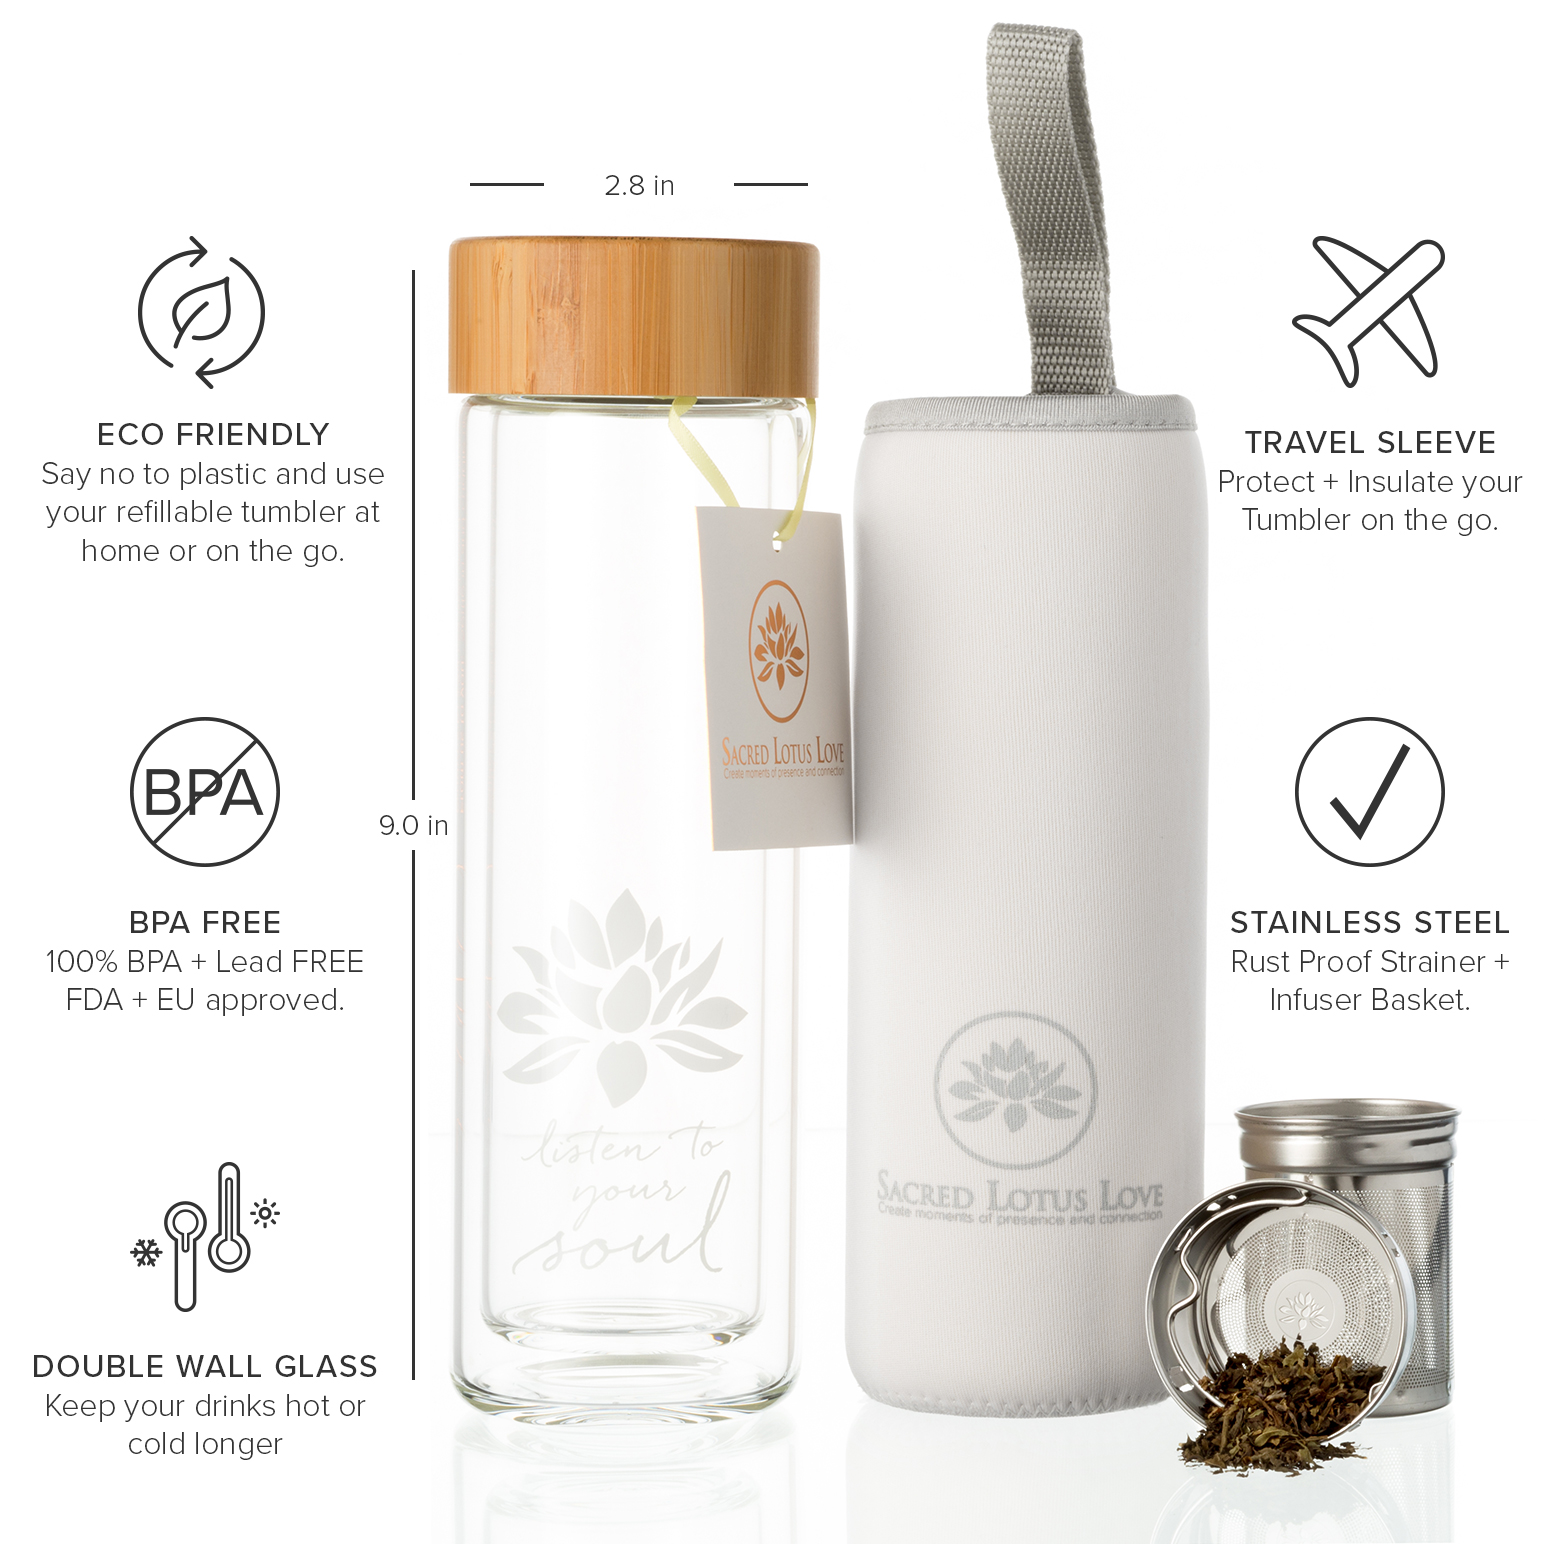 New Glass Tea Tumbler Travel Bottle Strainer & Infuser for Tea Coffee Fruit 